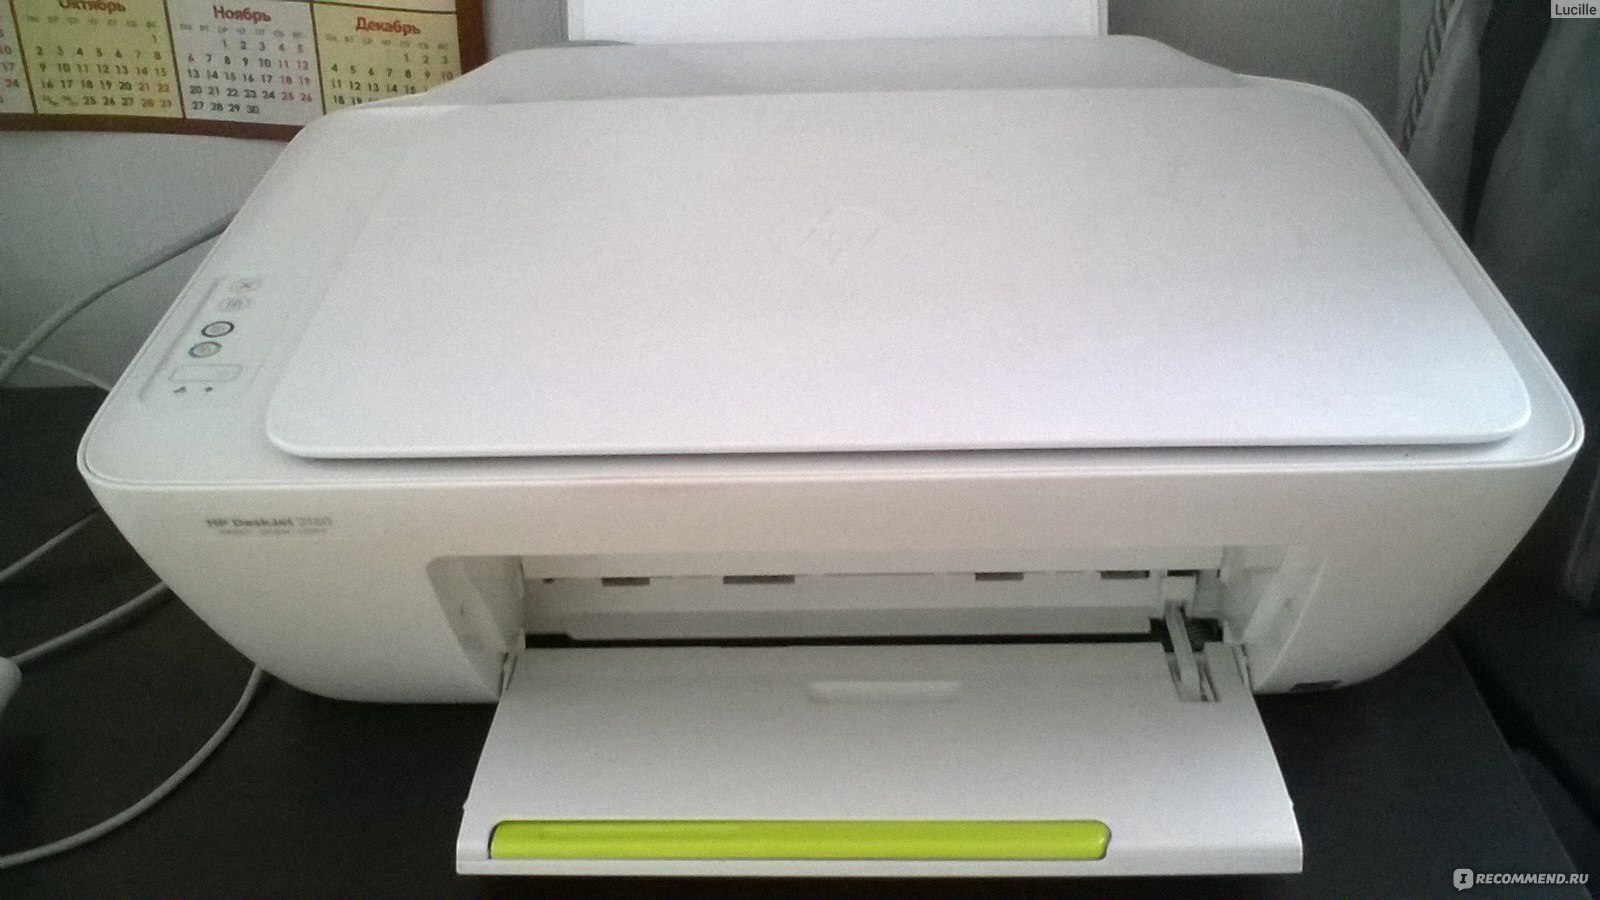 Многофункциональное устройство HP DeskJet 2130 фото